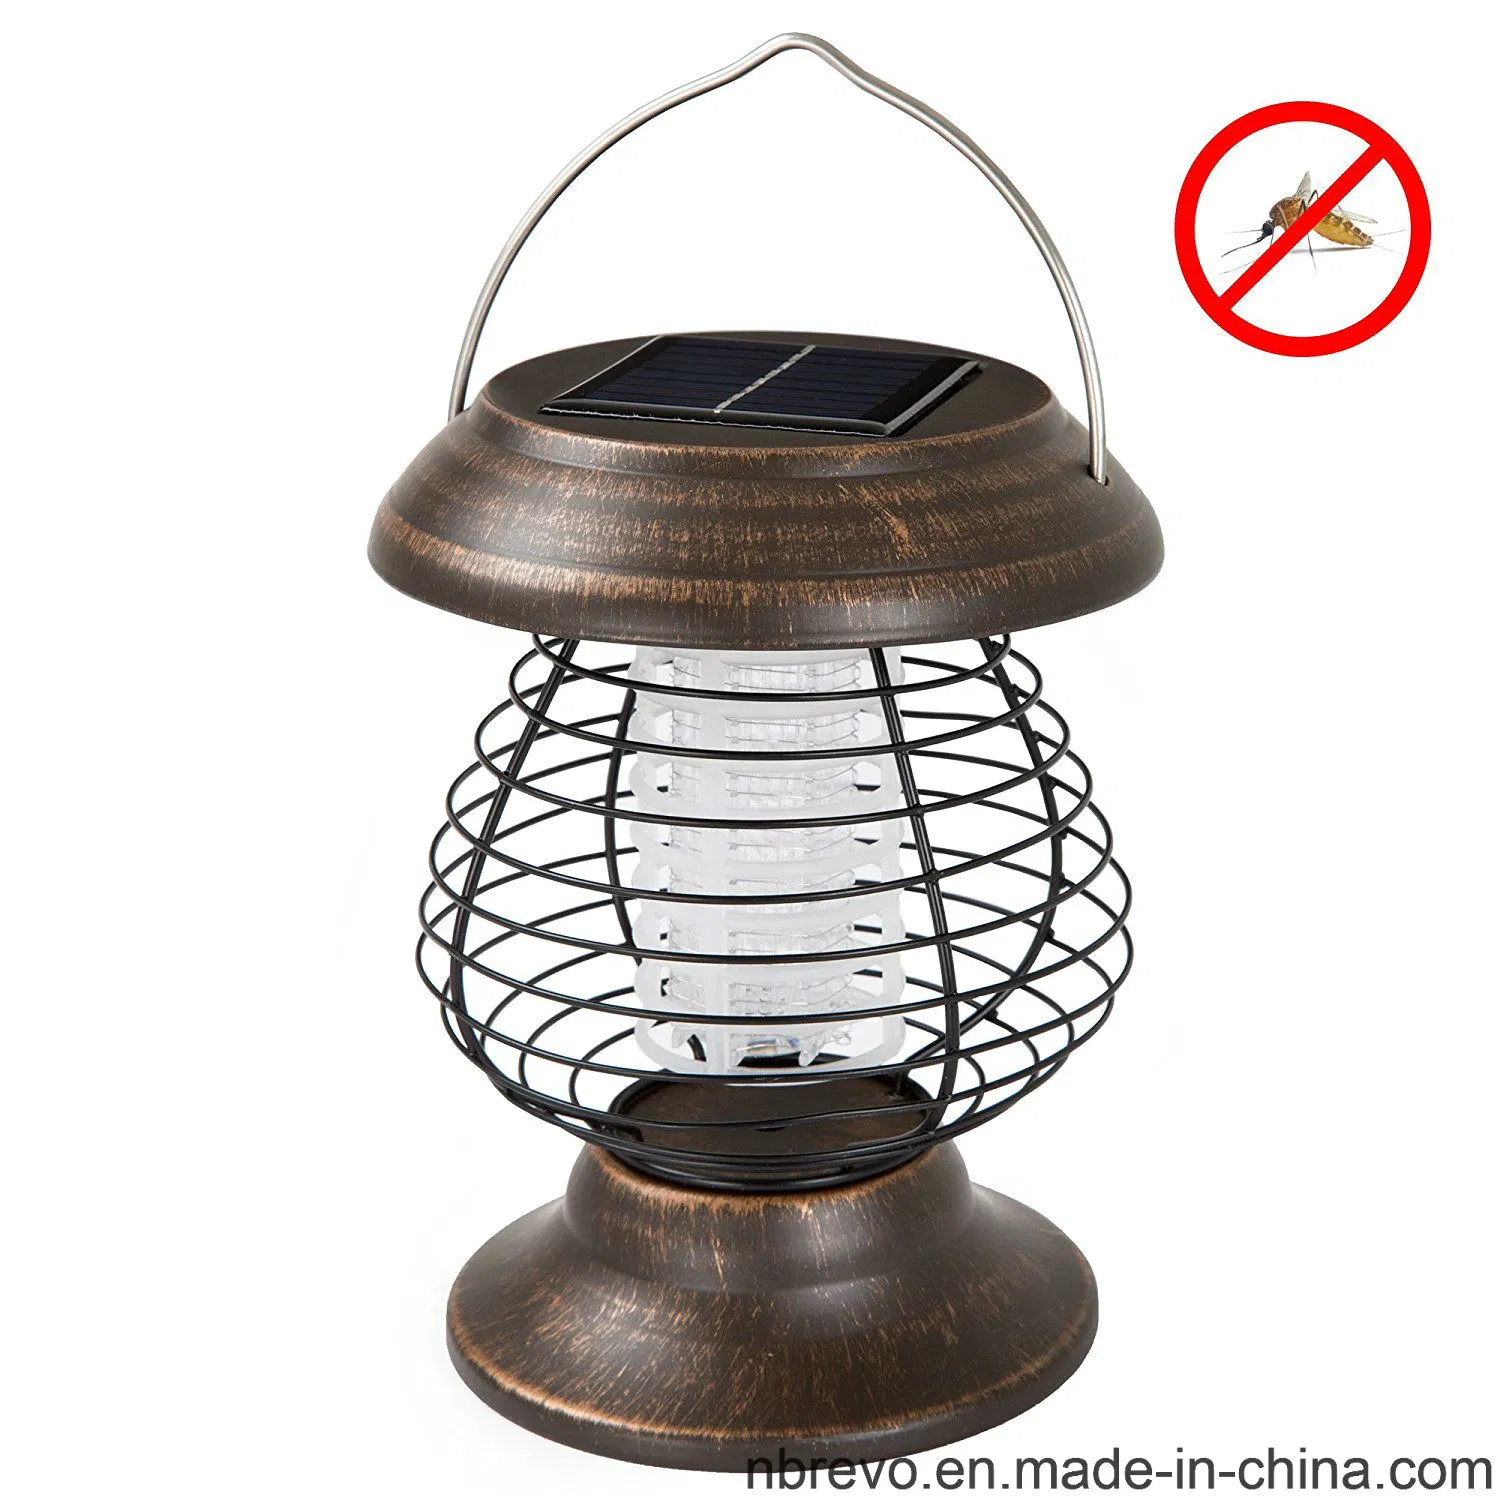 Solar Powered UV LED Garden Mosquito Killer Lamp (RS500)